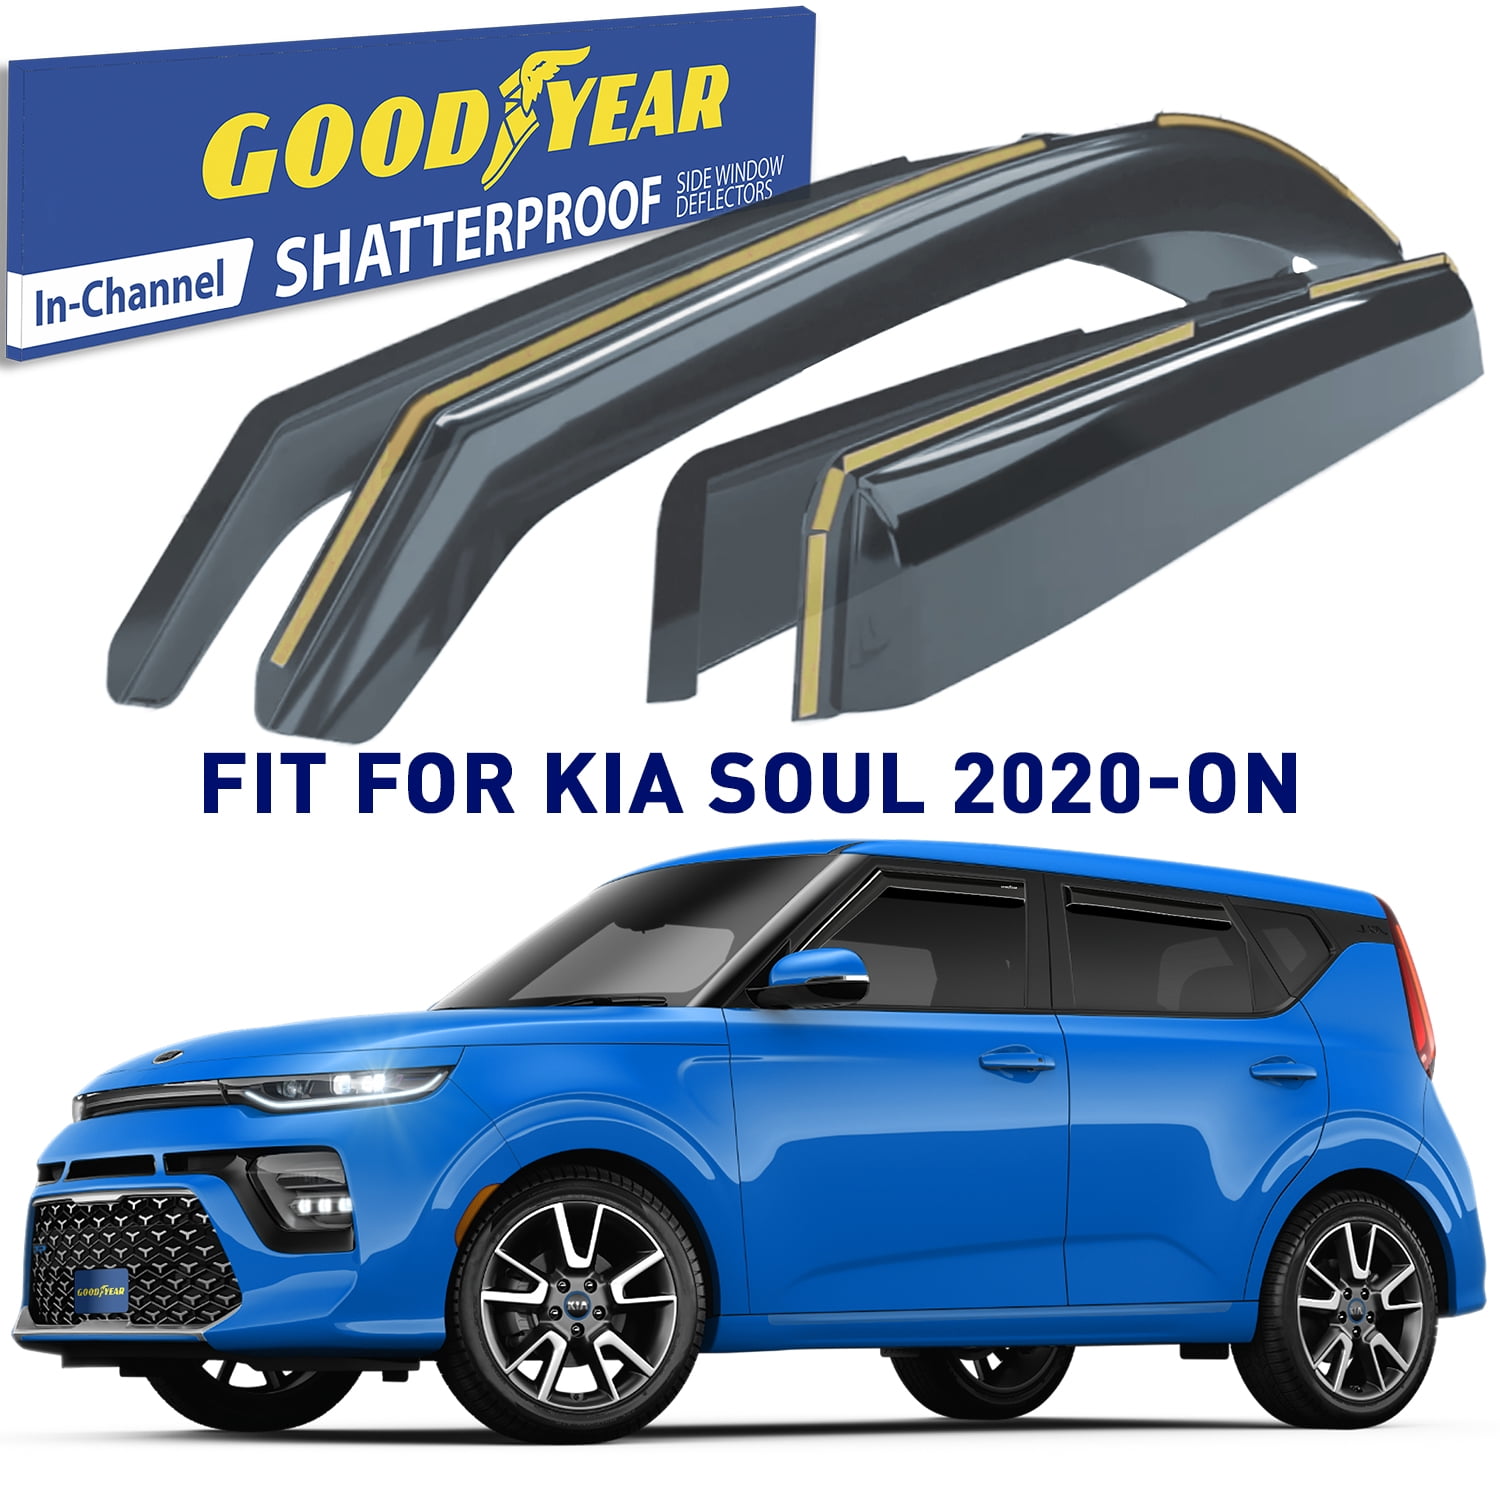 Goodyear Shatterproof in-Channel Window Deflectors for Kia Soul